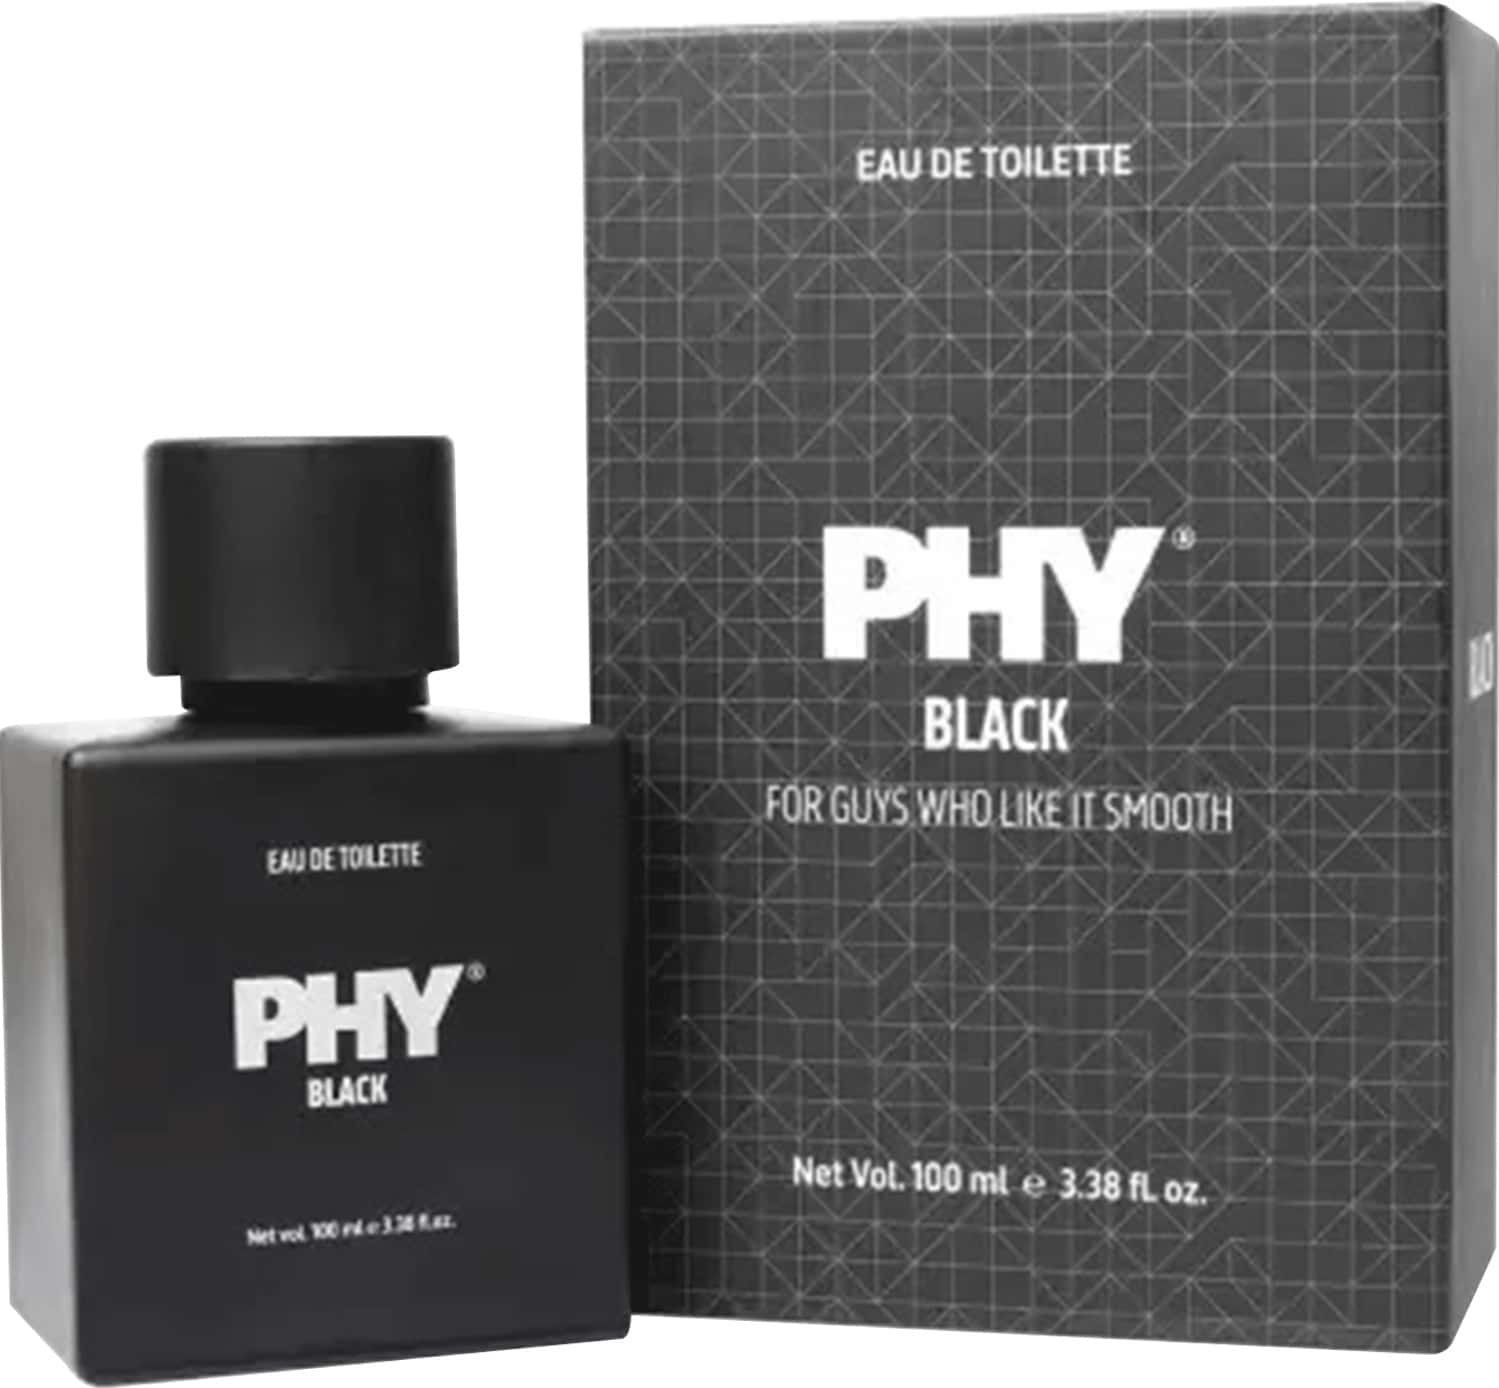 Phy Eau De Toilette - Black - 100 Ml